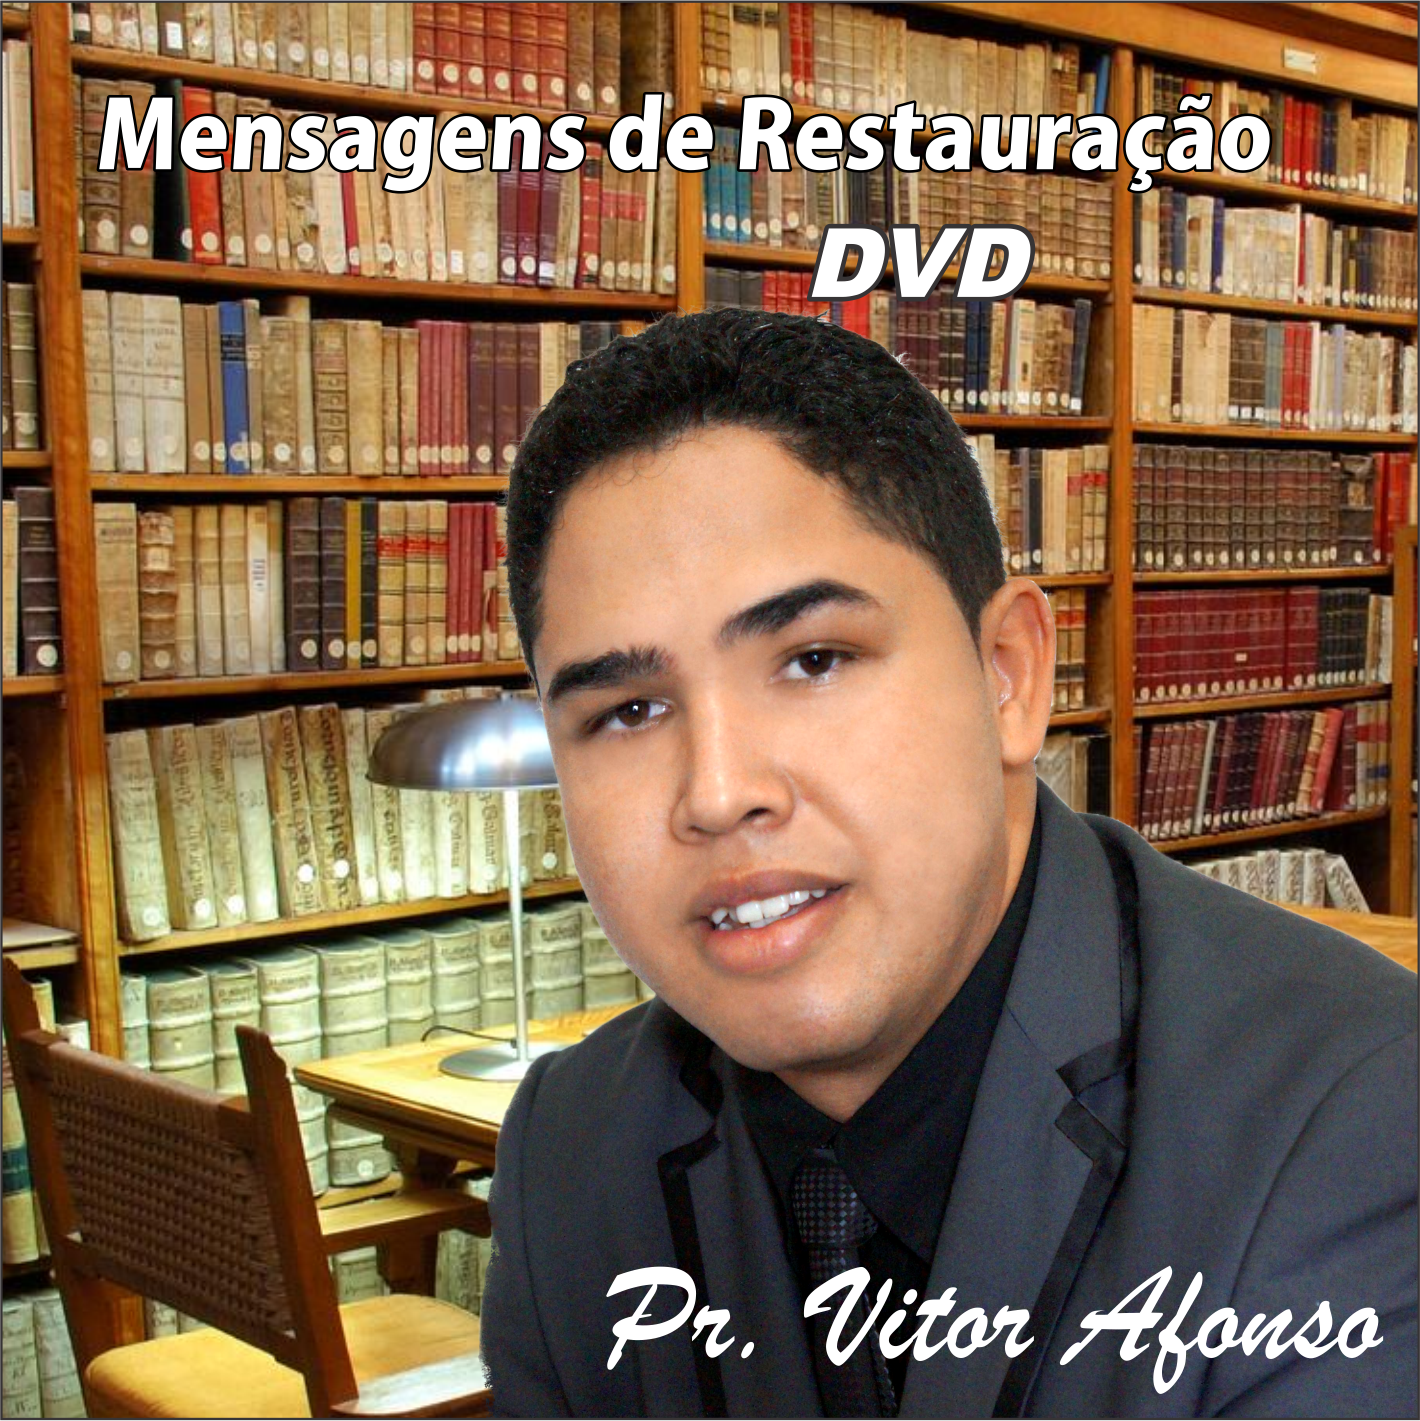 DVD Mensagens de Restauração Pr. Vitor Afonso, Mais um lançamento Digital Record´s